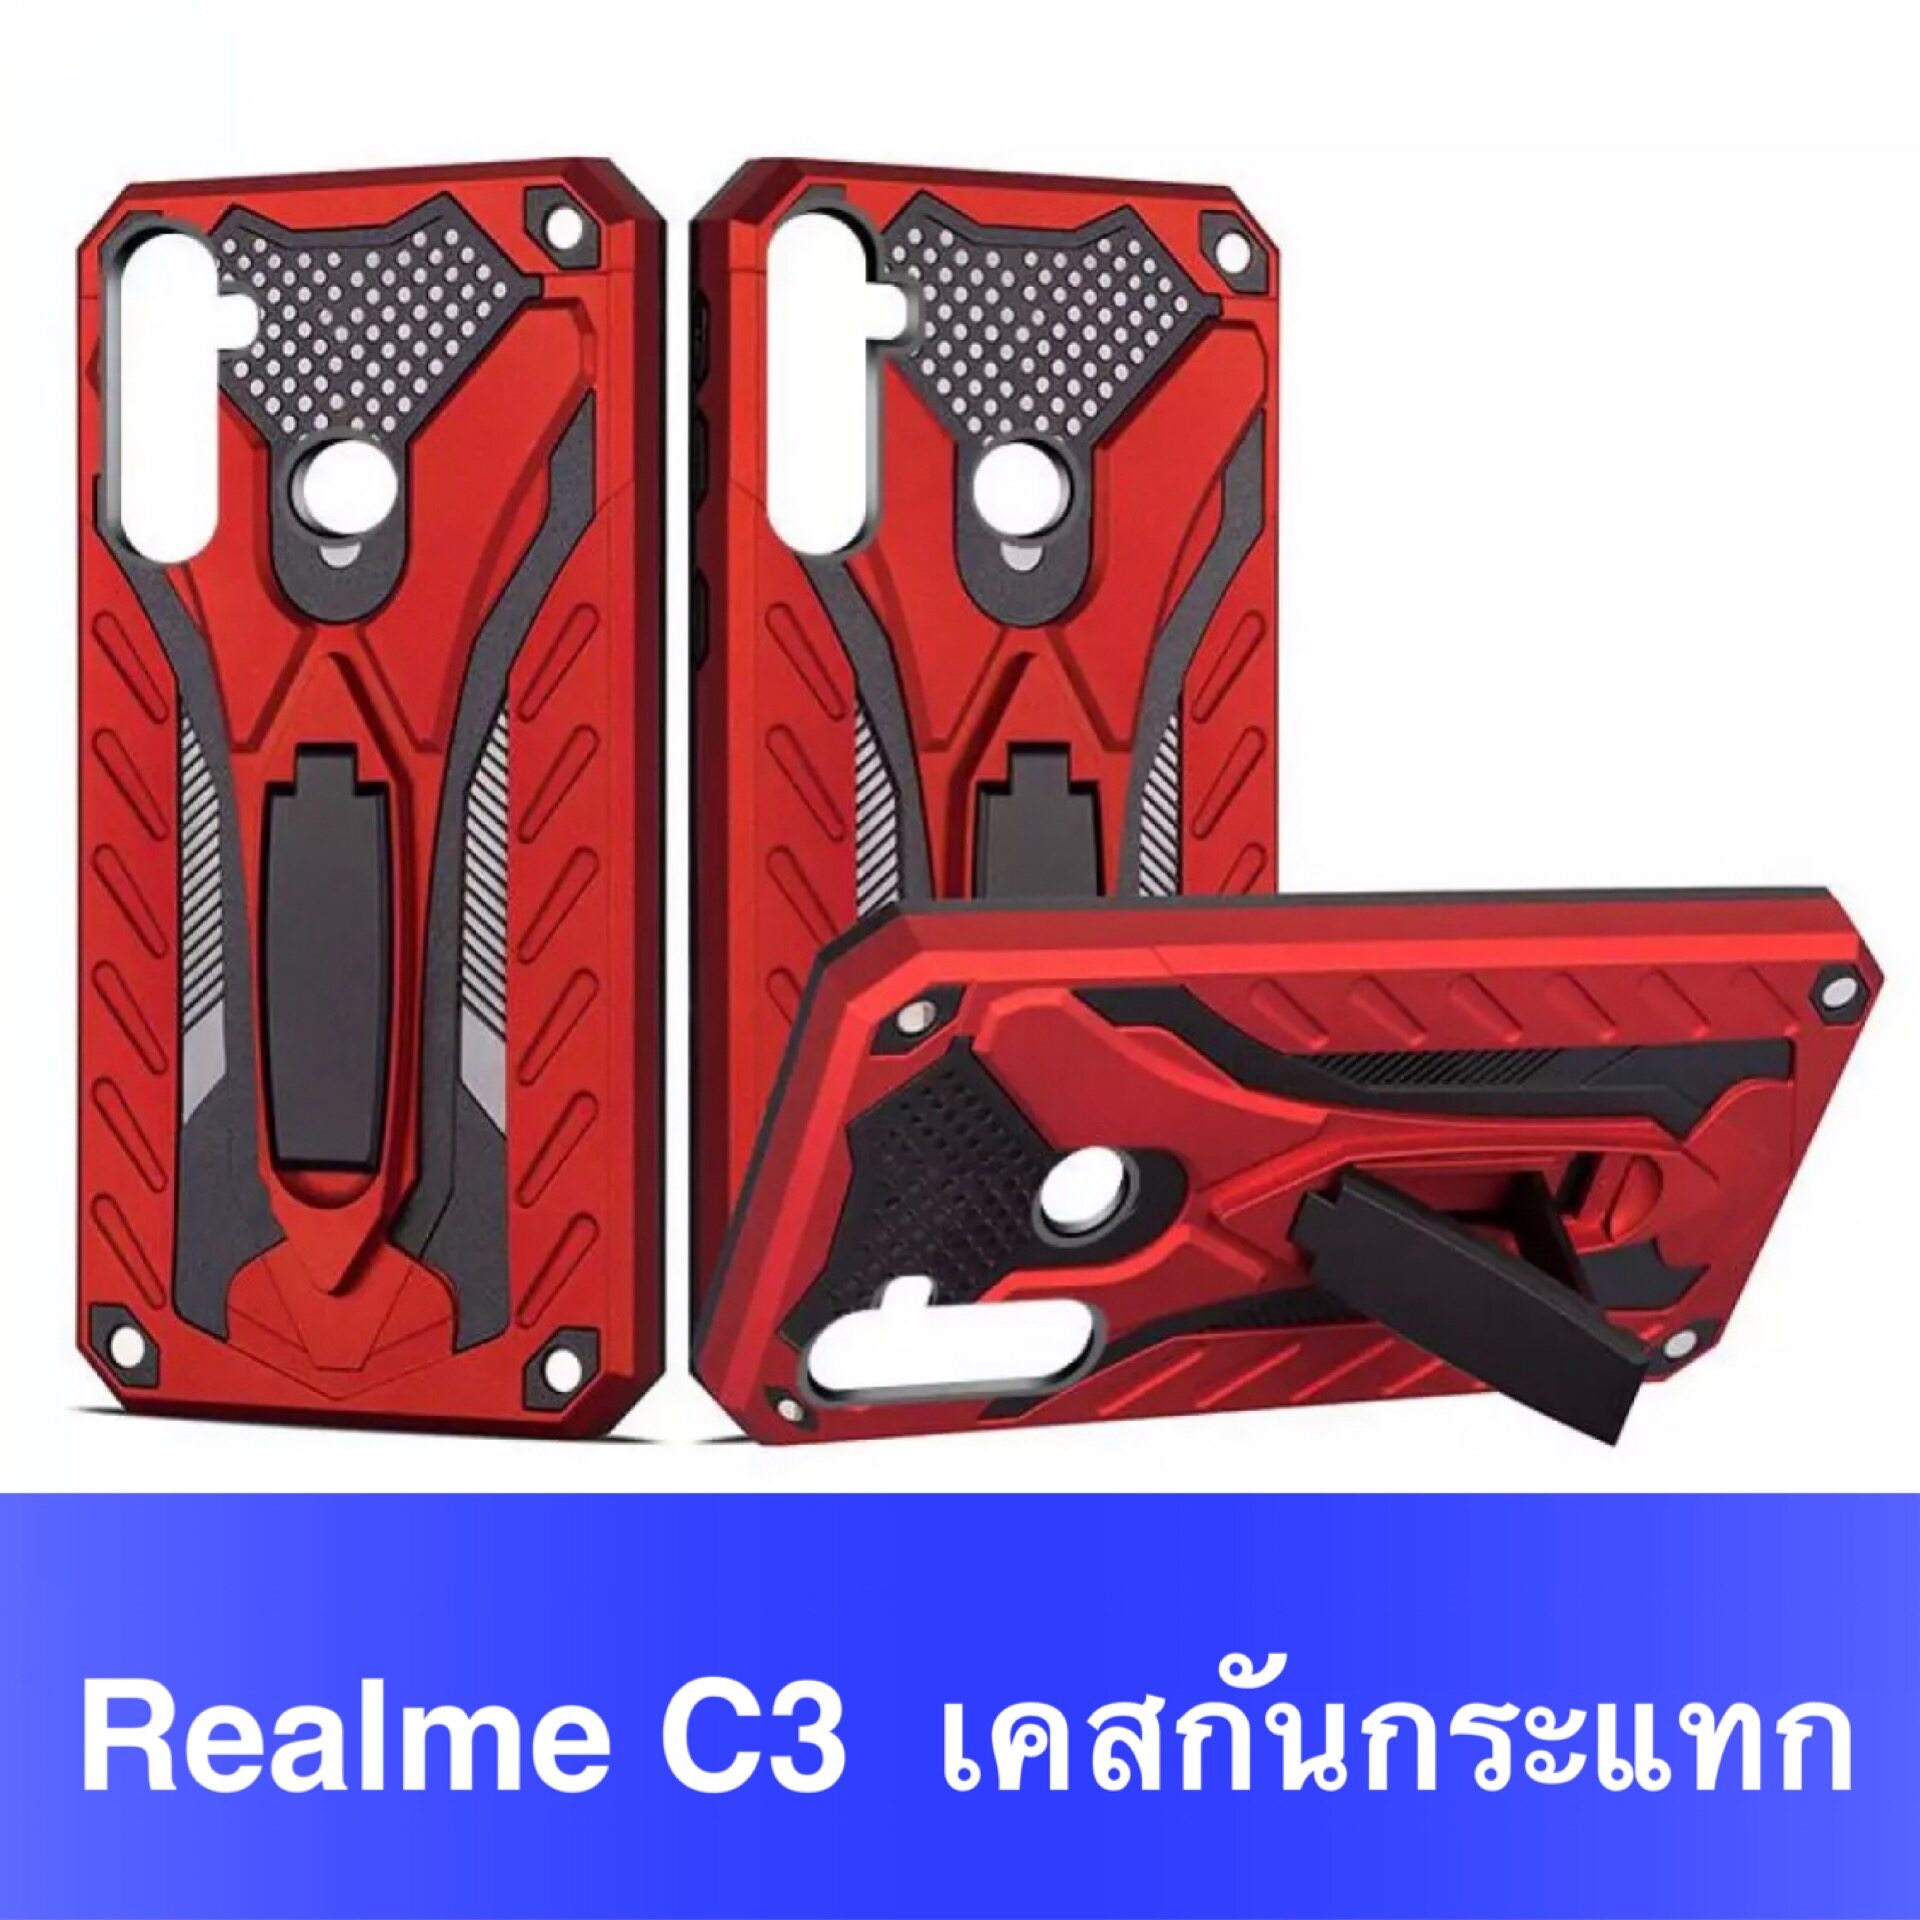 ส่งจากไทย ของแท้ 100% Case Realme C3 เคสหุ่นยนต์ เคสกันกระแทก TPU CASE เคสเรียวมี เคส Realme C3 สินค้าใหม่ เคสโทรศัพท์ ต้านเชื้อแบคทีเรีย